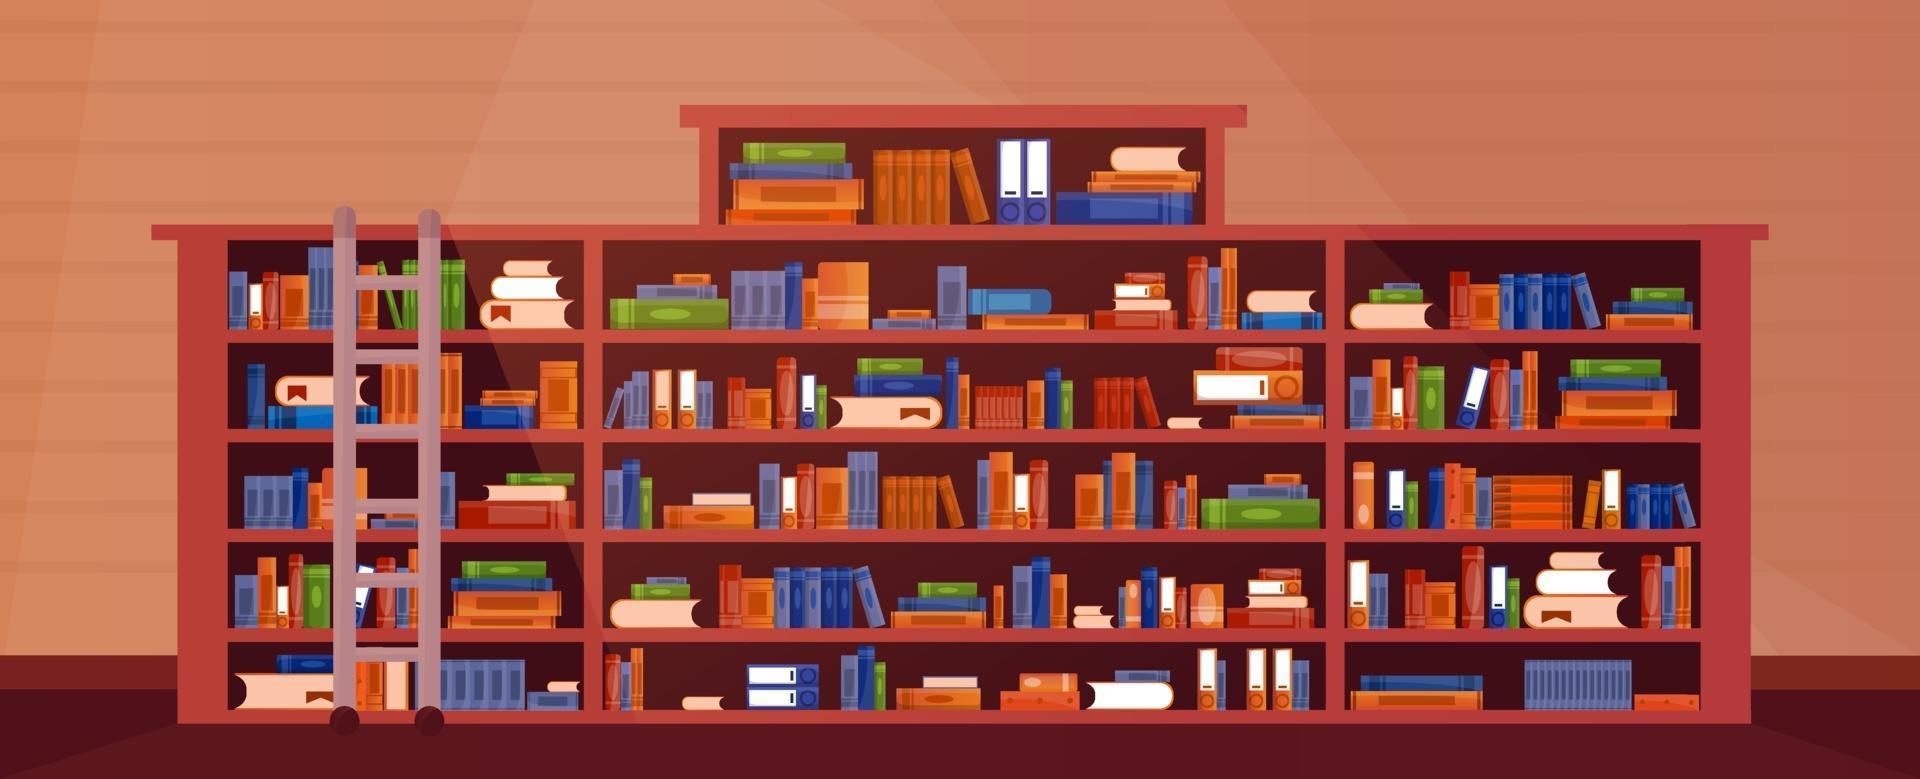 Librería grande con libros con escalera, escalera. interior del estante del libro de la biblioteca. libros y conocimientos. vector